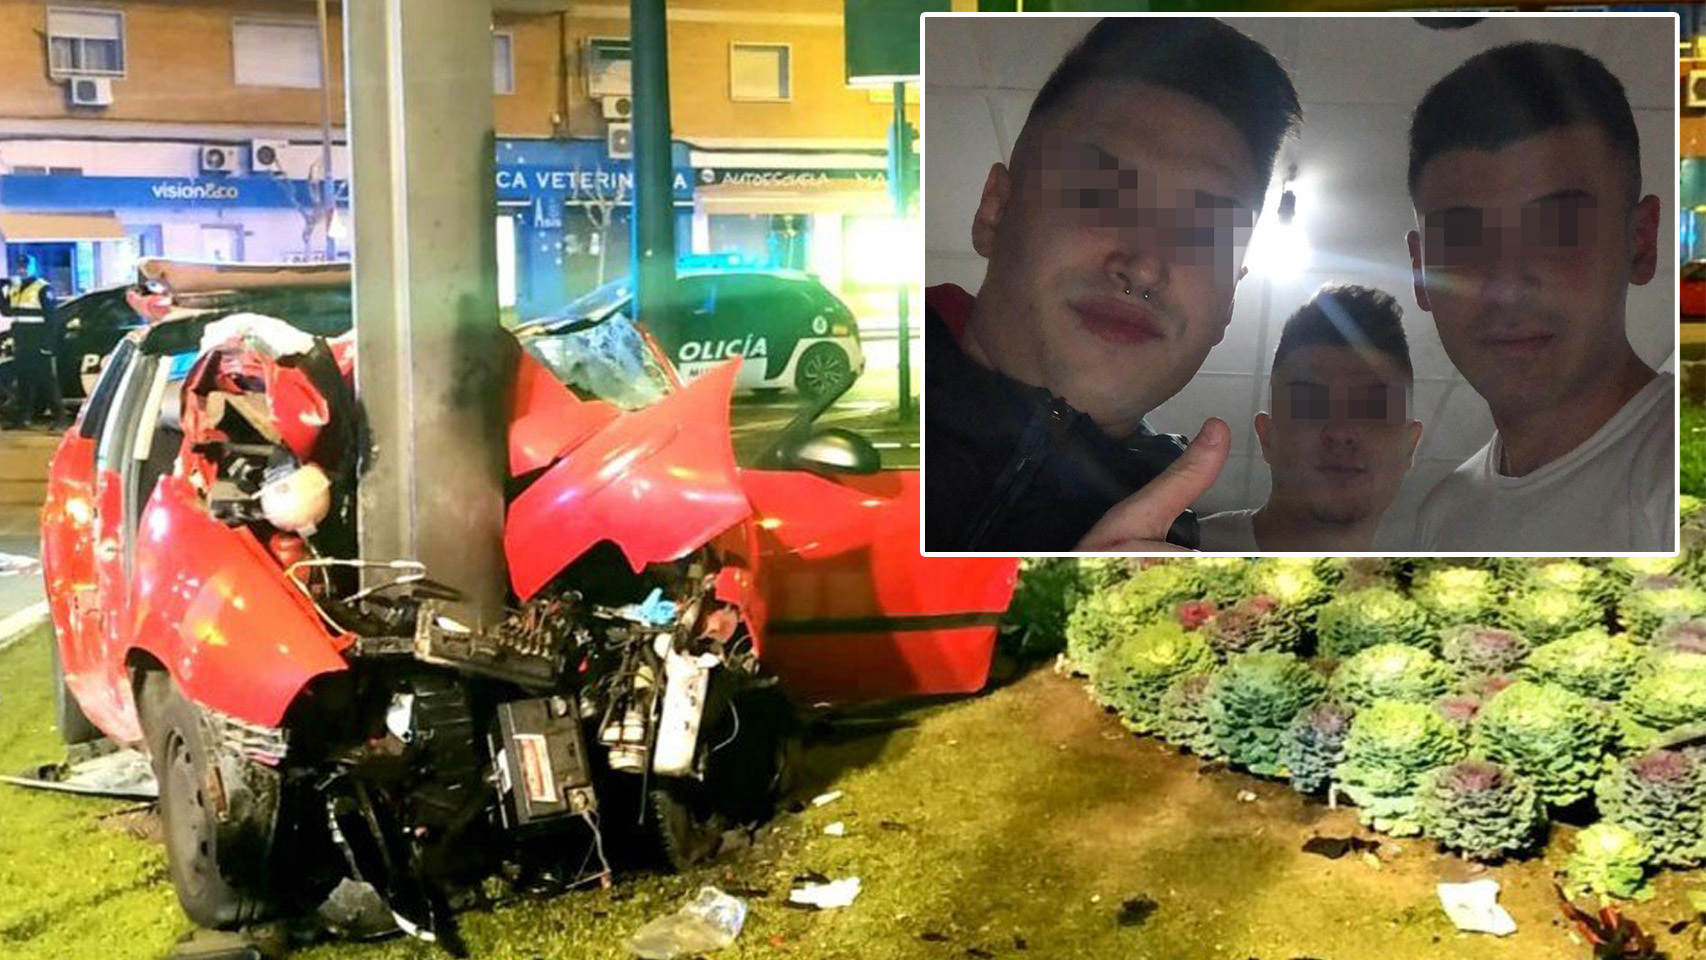 Fernando (fallecido en el accidente de tráfico), Fran y José haciéndose un selfie antes de desplazarse a la zona de las tascas de Murcia.